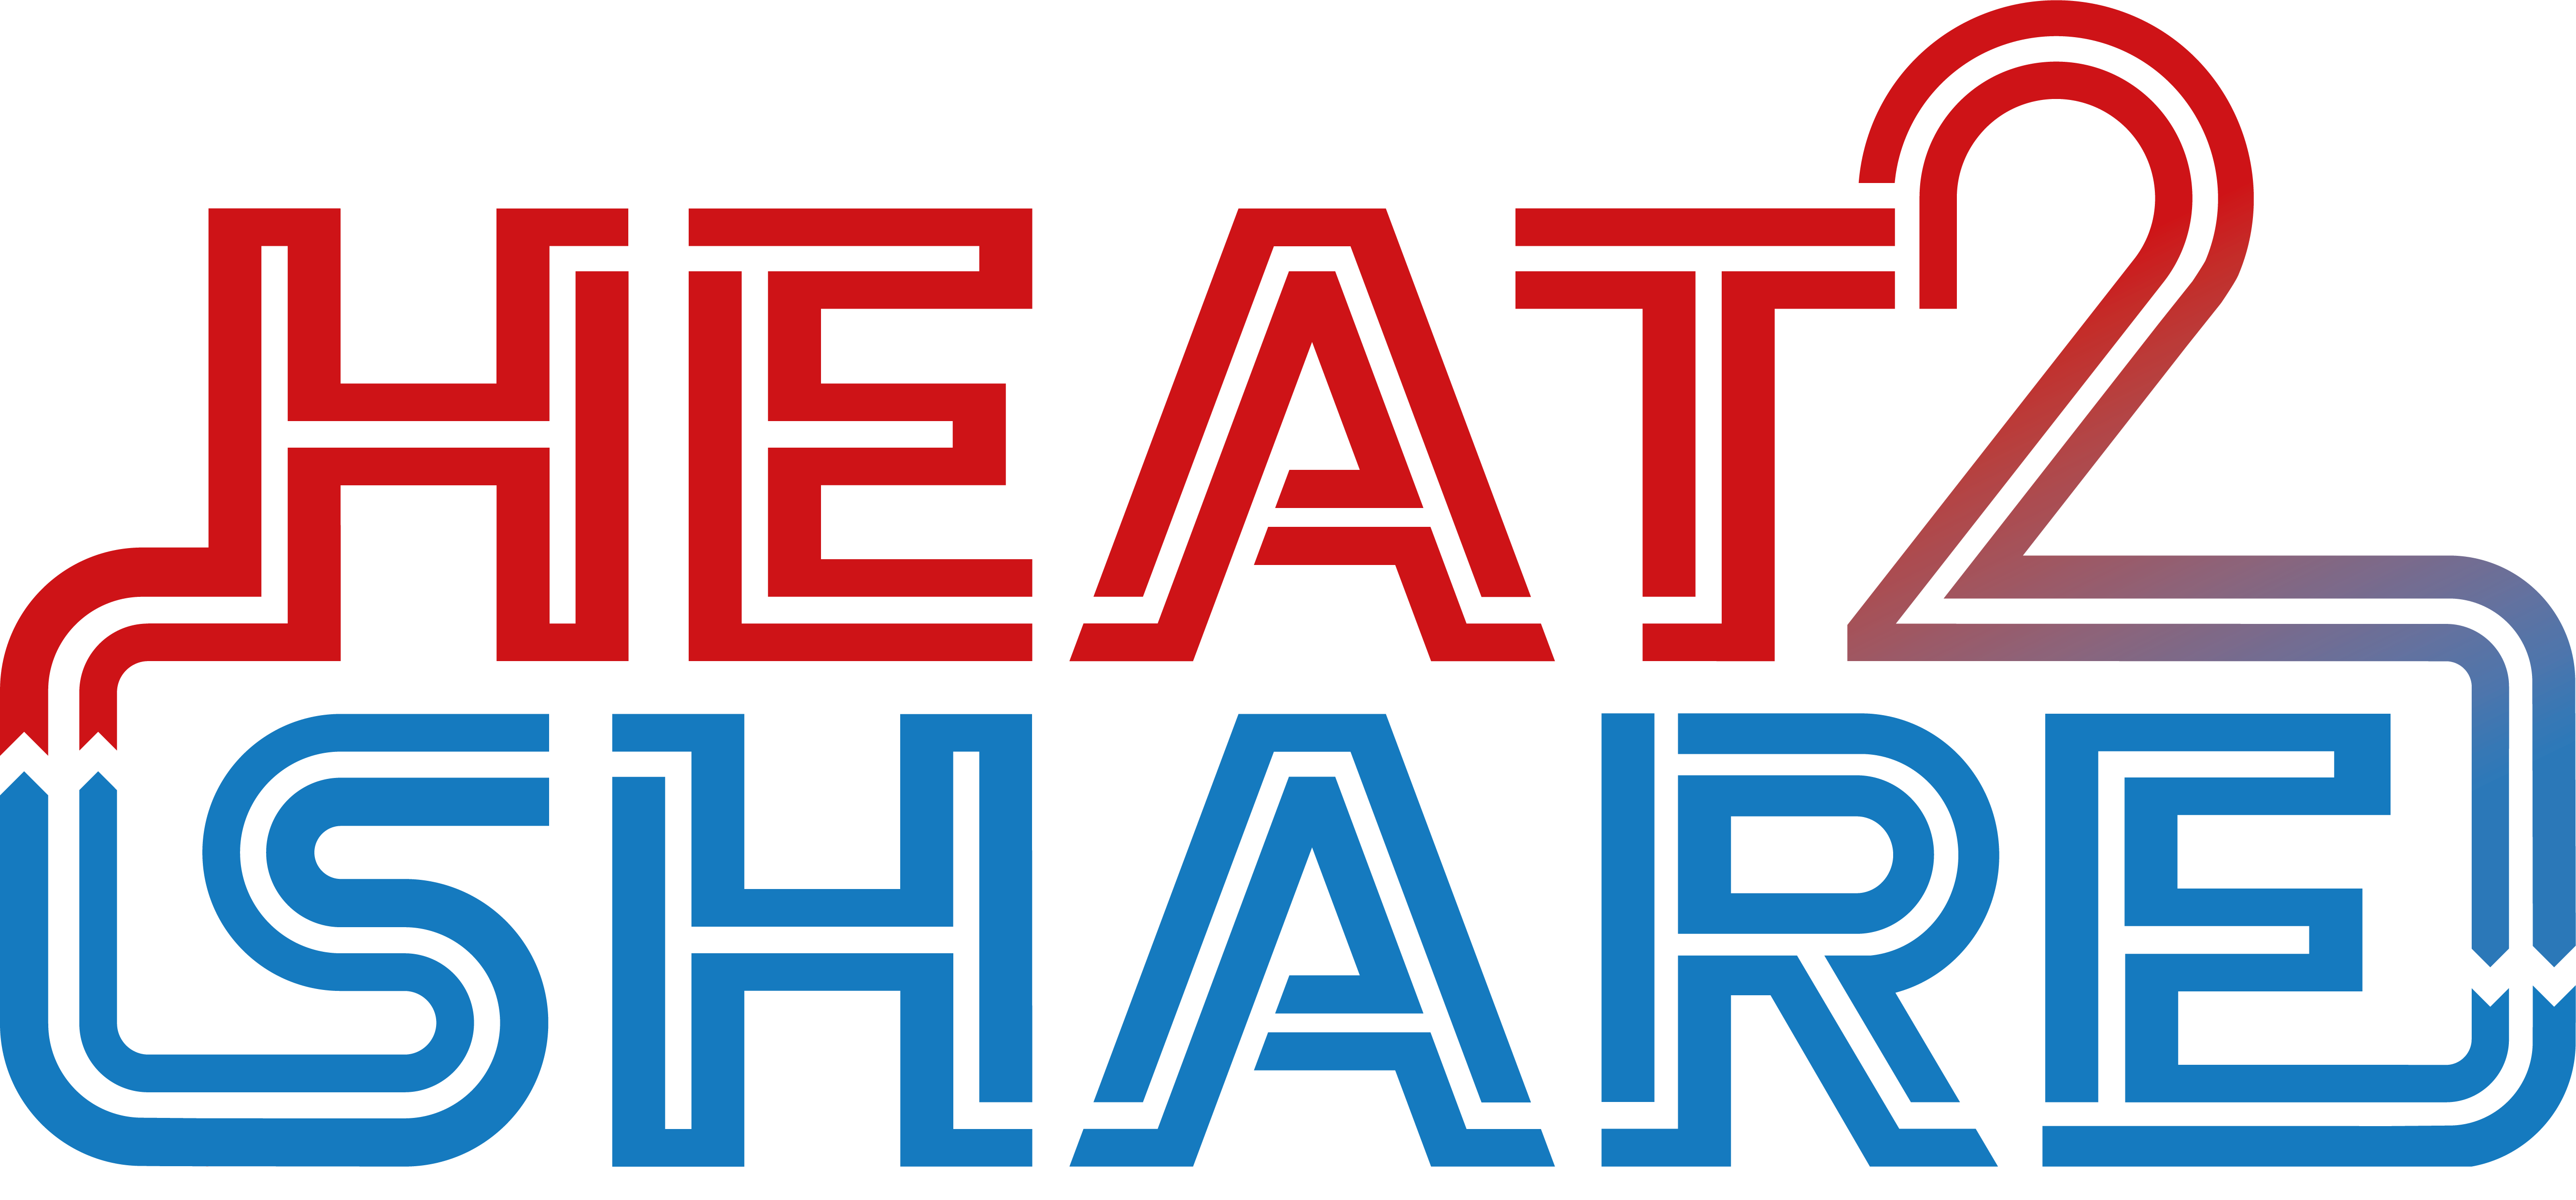 Heat 2 Share Logo